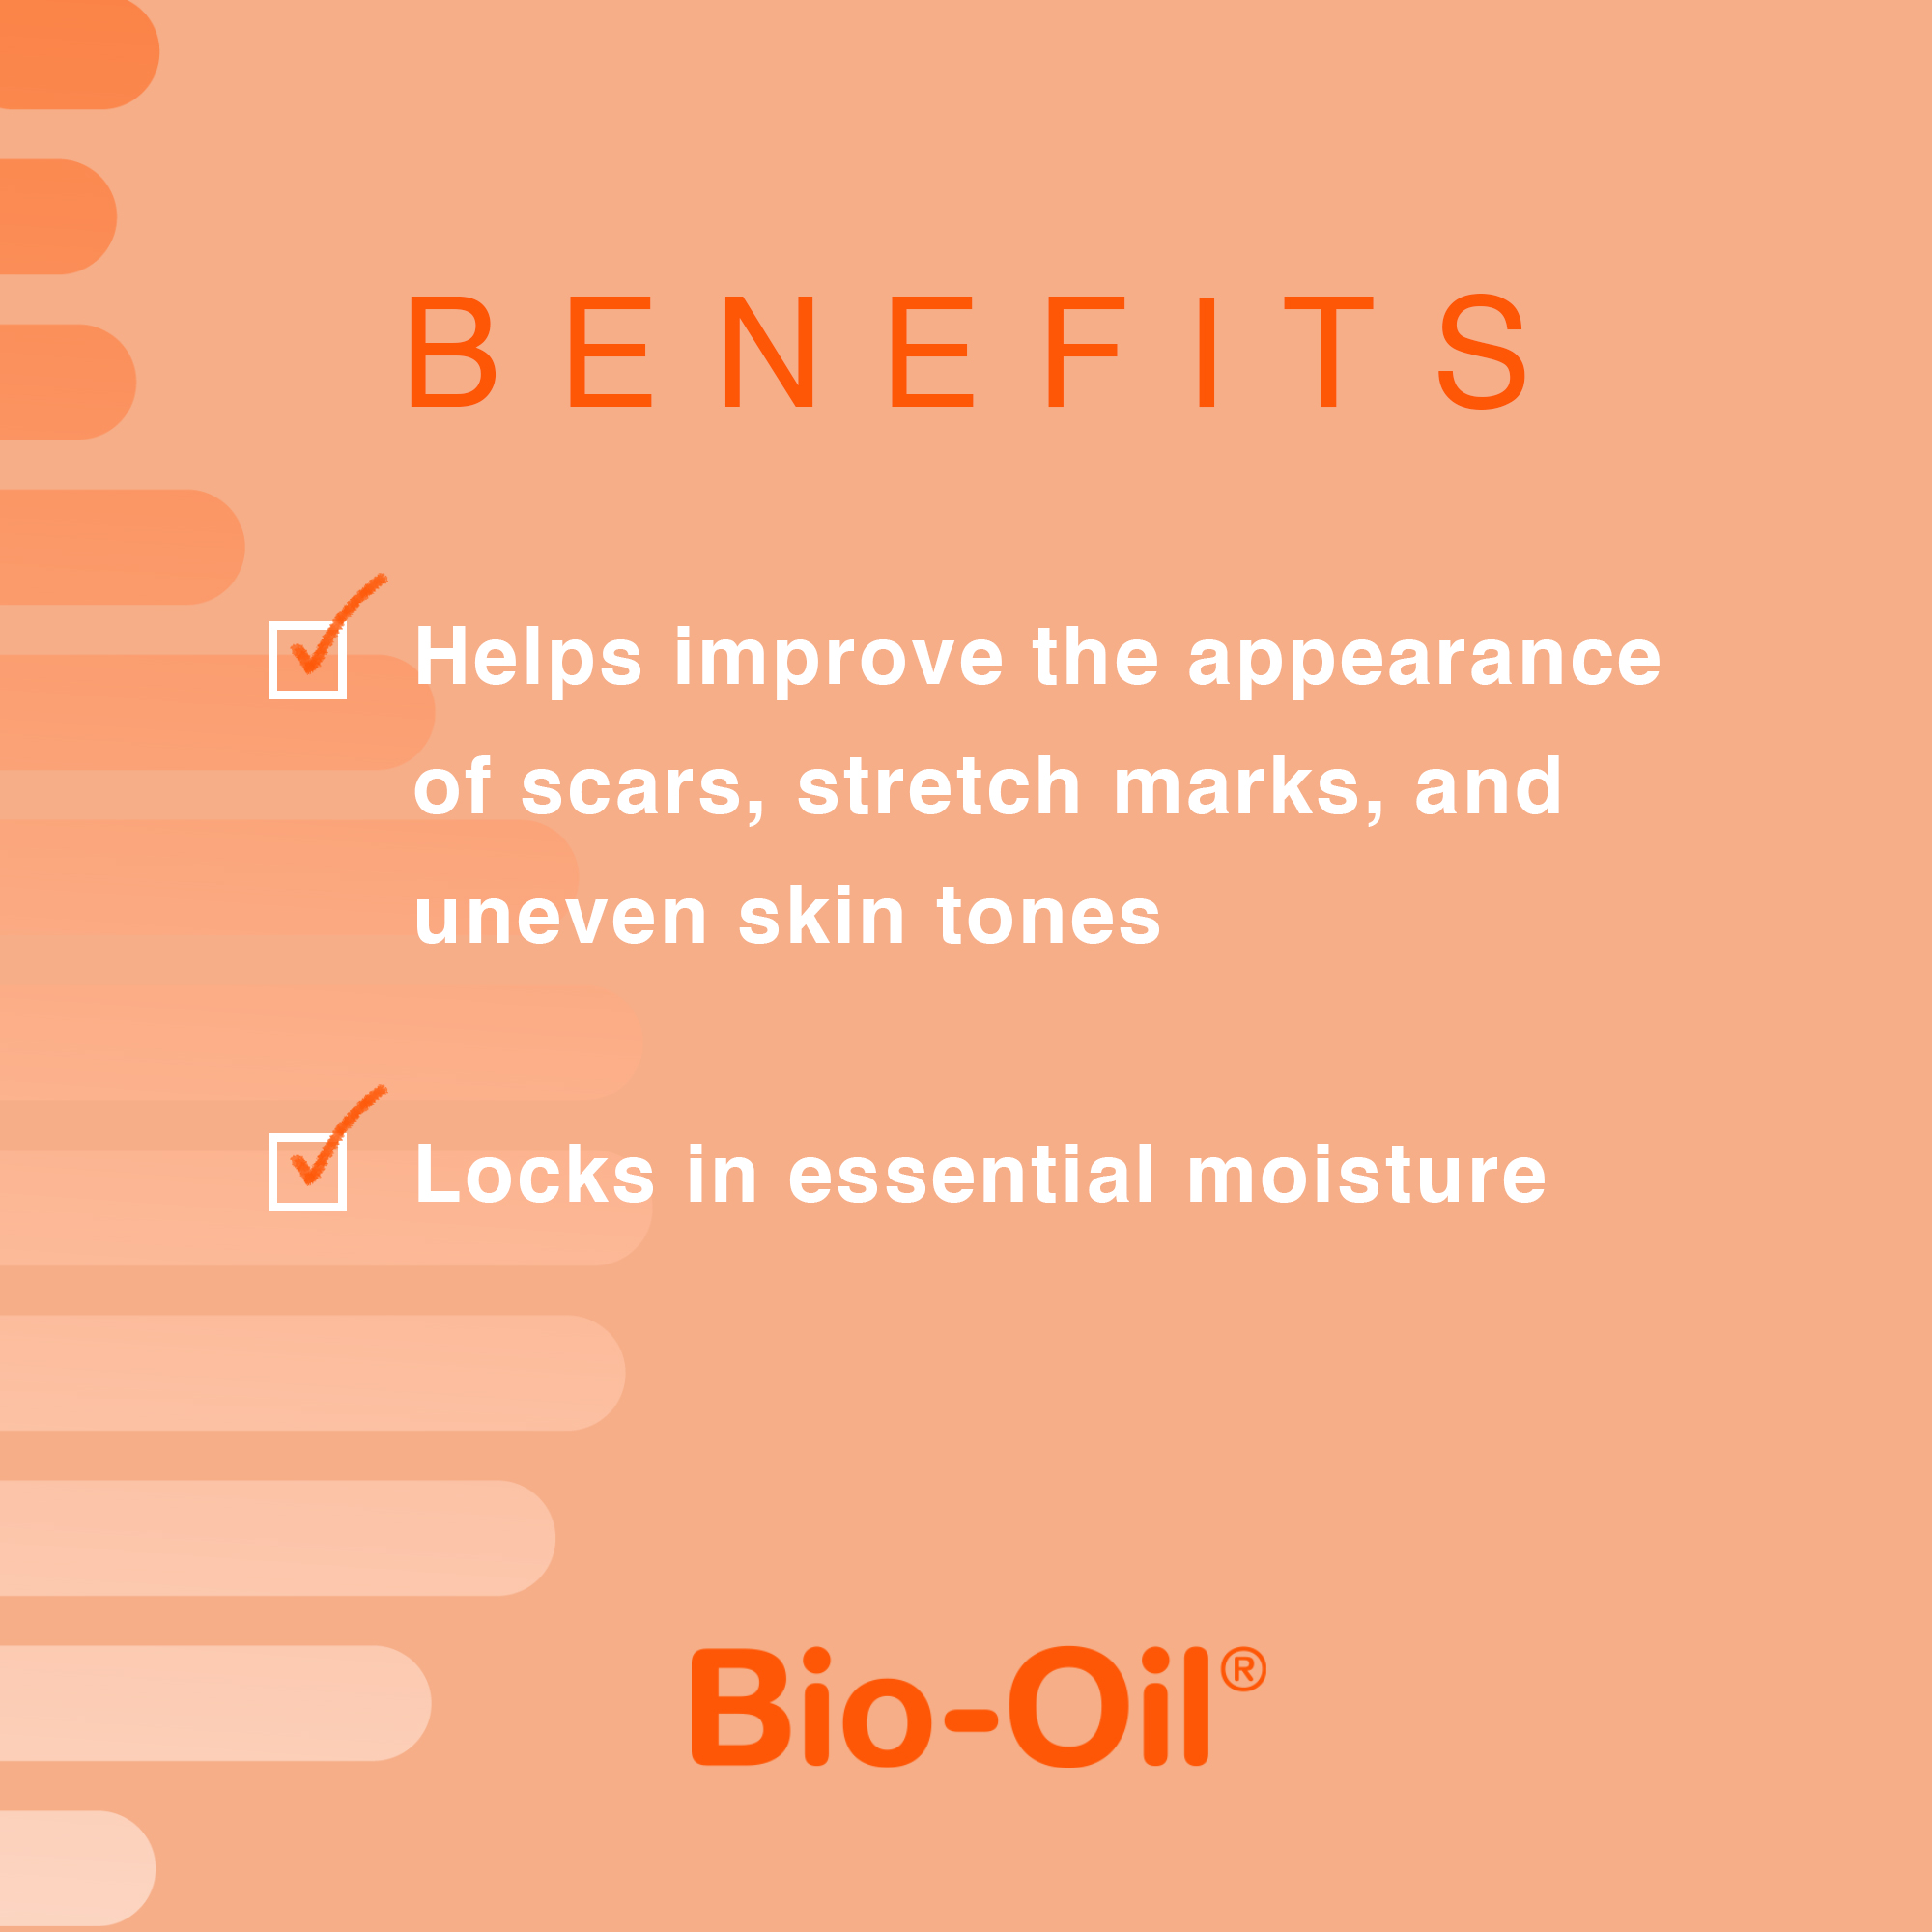 Bio-Oil Skincare Oil, Body Oil & Dark Spot Corrector for Scars and Stretchmarks, 2 fl oz - image 4 of 12